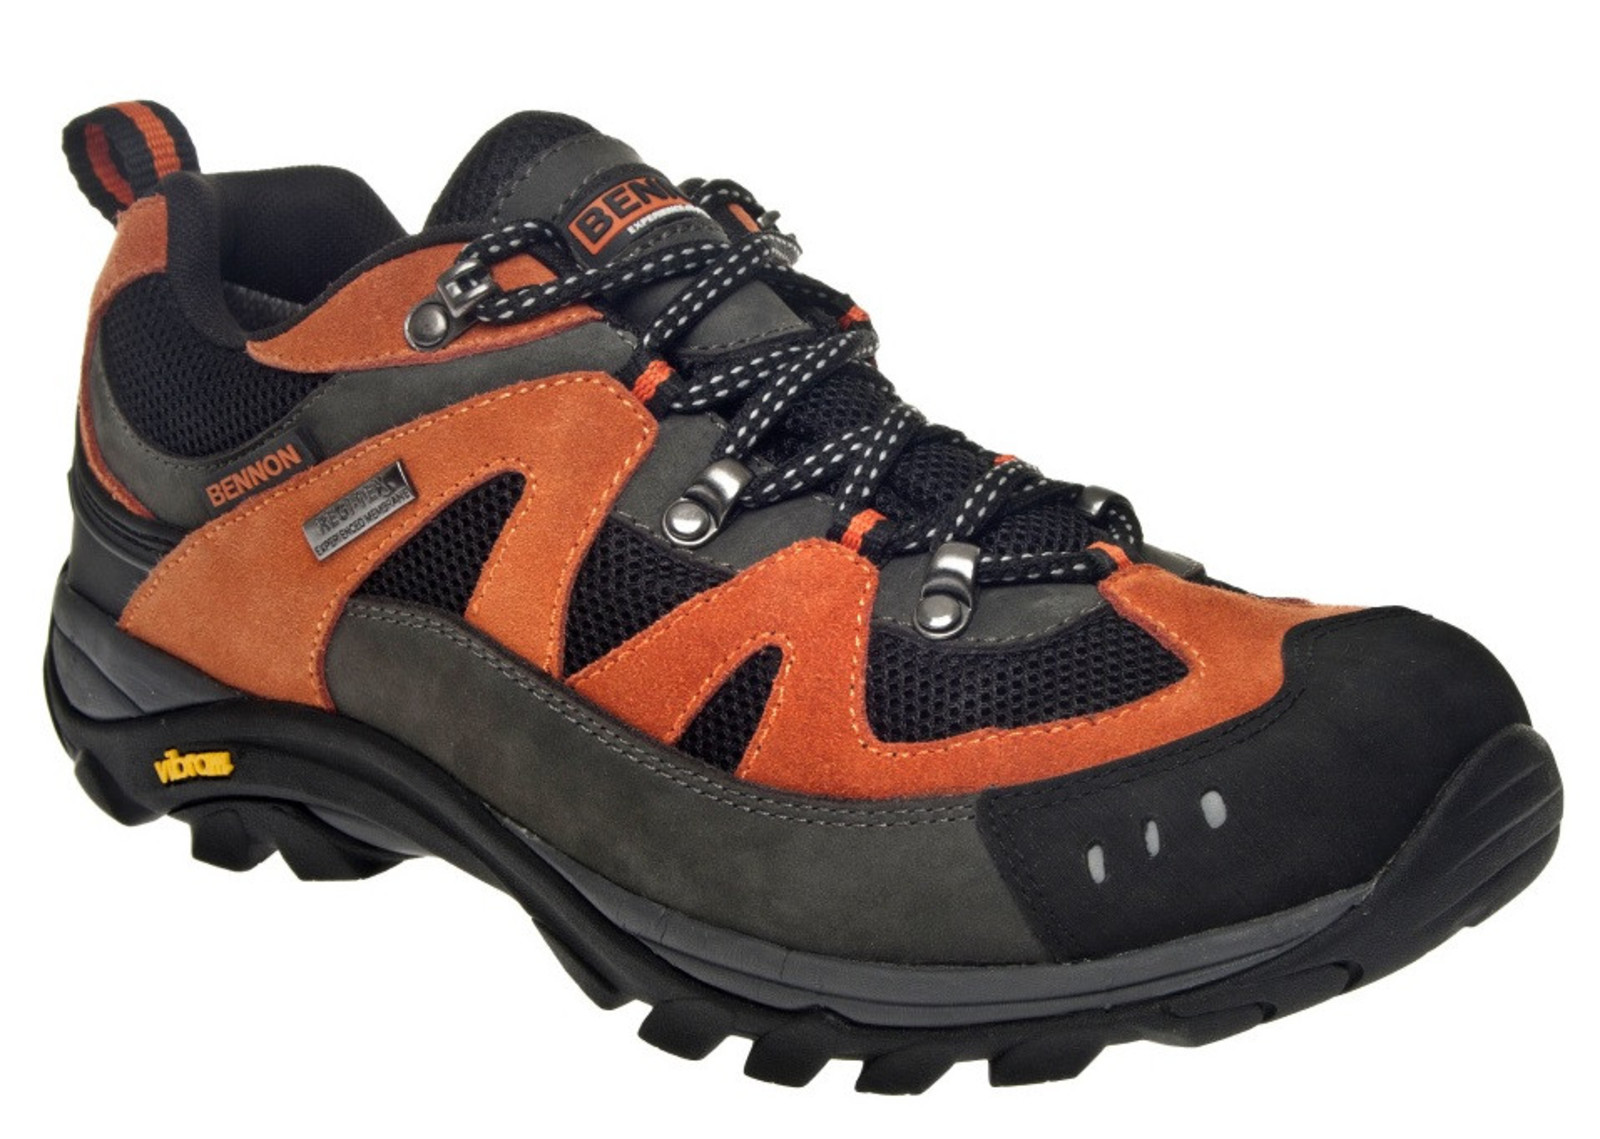 Outdoorové topánky Bennon Emperado s membránou - veľkosť: 46, farba: sivá/oranžová